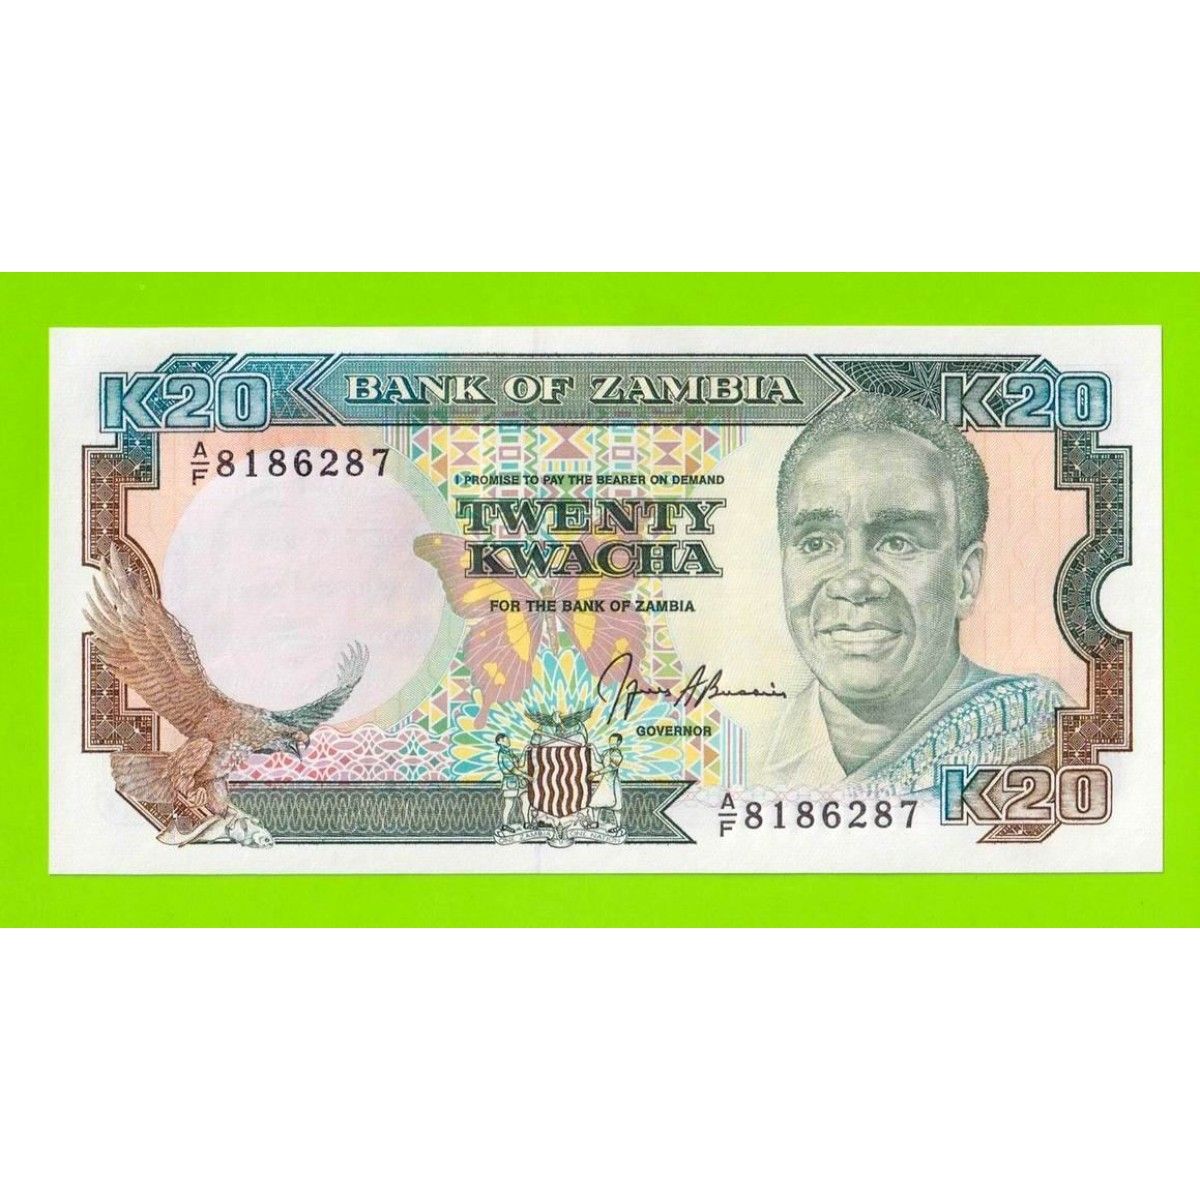 Маврикийская рупия к рублю. Замбия 1 квача 1989 год. Банкноты Замбии 10 квача.1991 г.. Валюта Замбии. Банкнота 20 Kwacha фото.